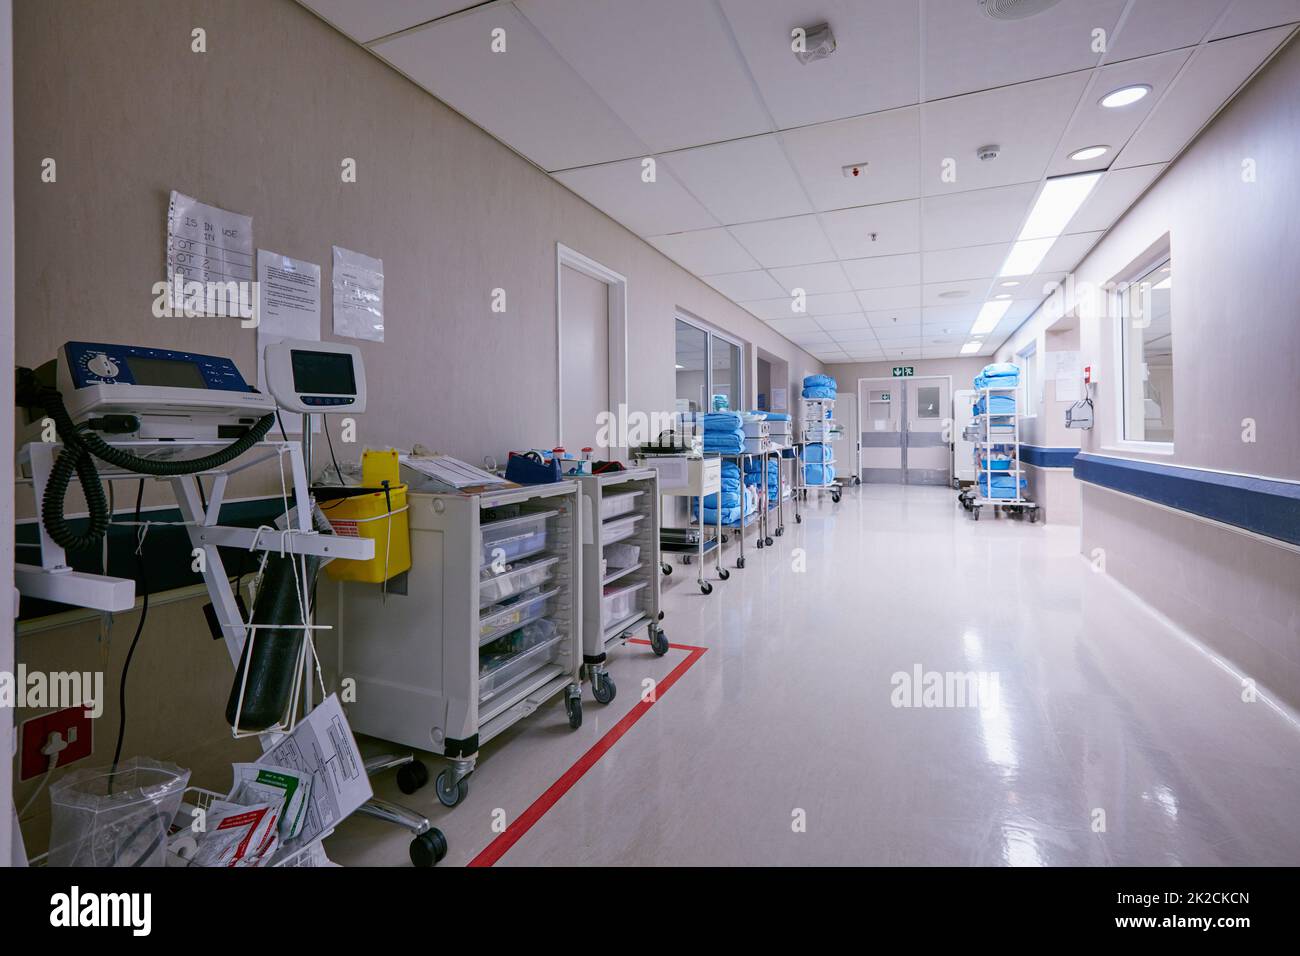 Der Flur der Heilung. Aufnahme eines leeren Durchgangs mit medizinischen Geräten an den Wänden eines Krankenhauses. Stockfoto